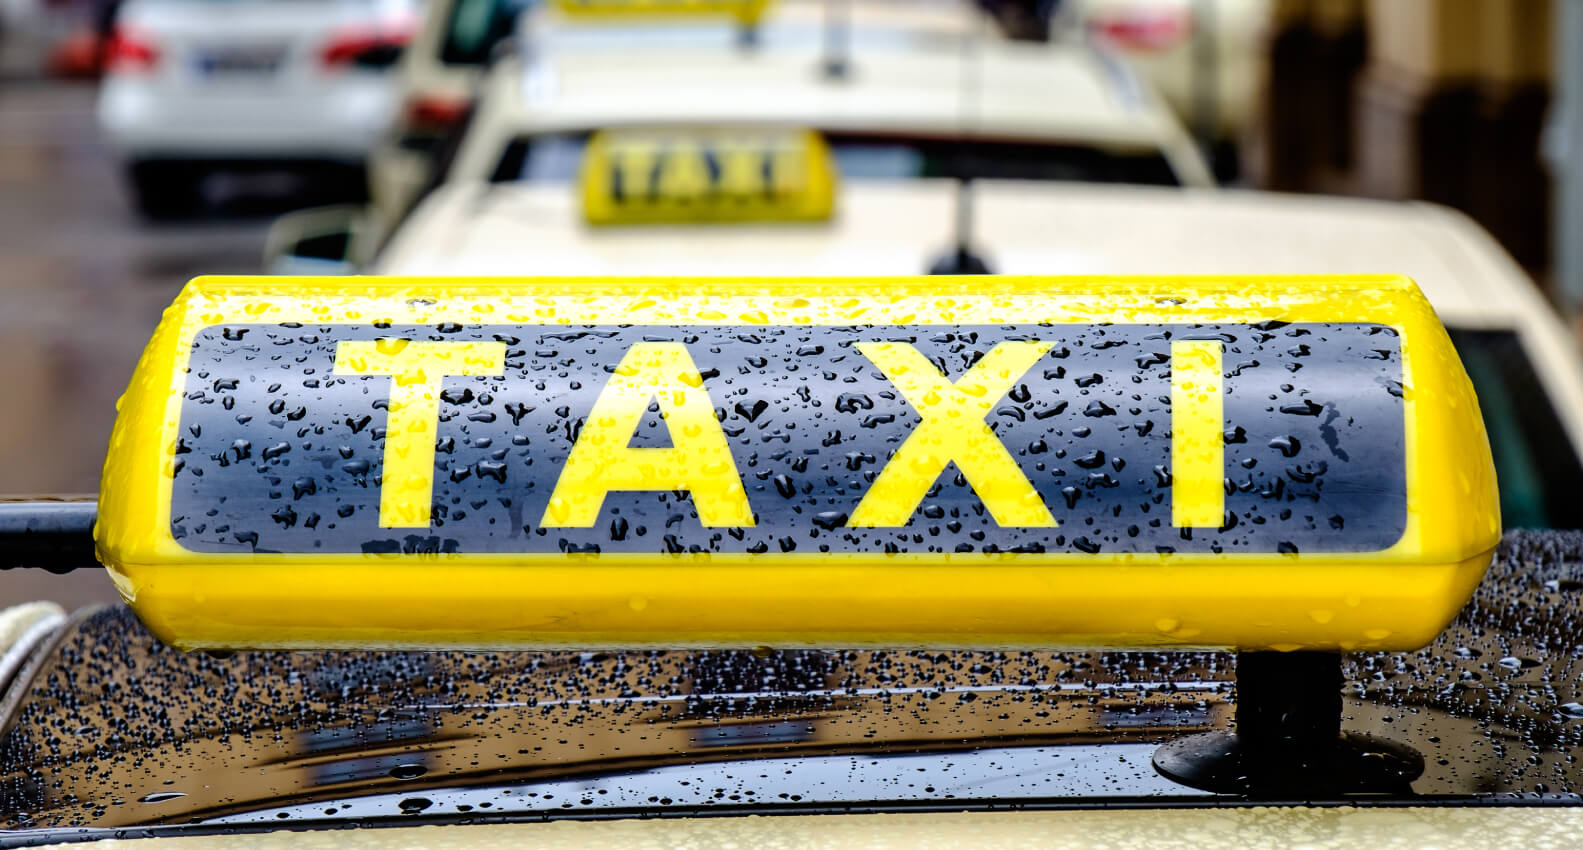  Tarieven Antwerpen - Budgettaxi - Goedkoop Vervoer/taxi ... - A-taxi  thumbnail